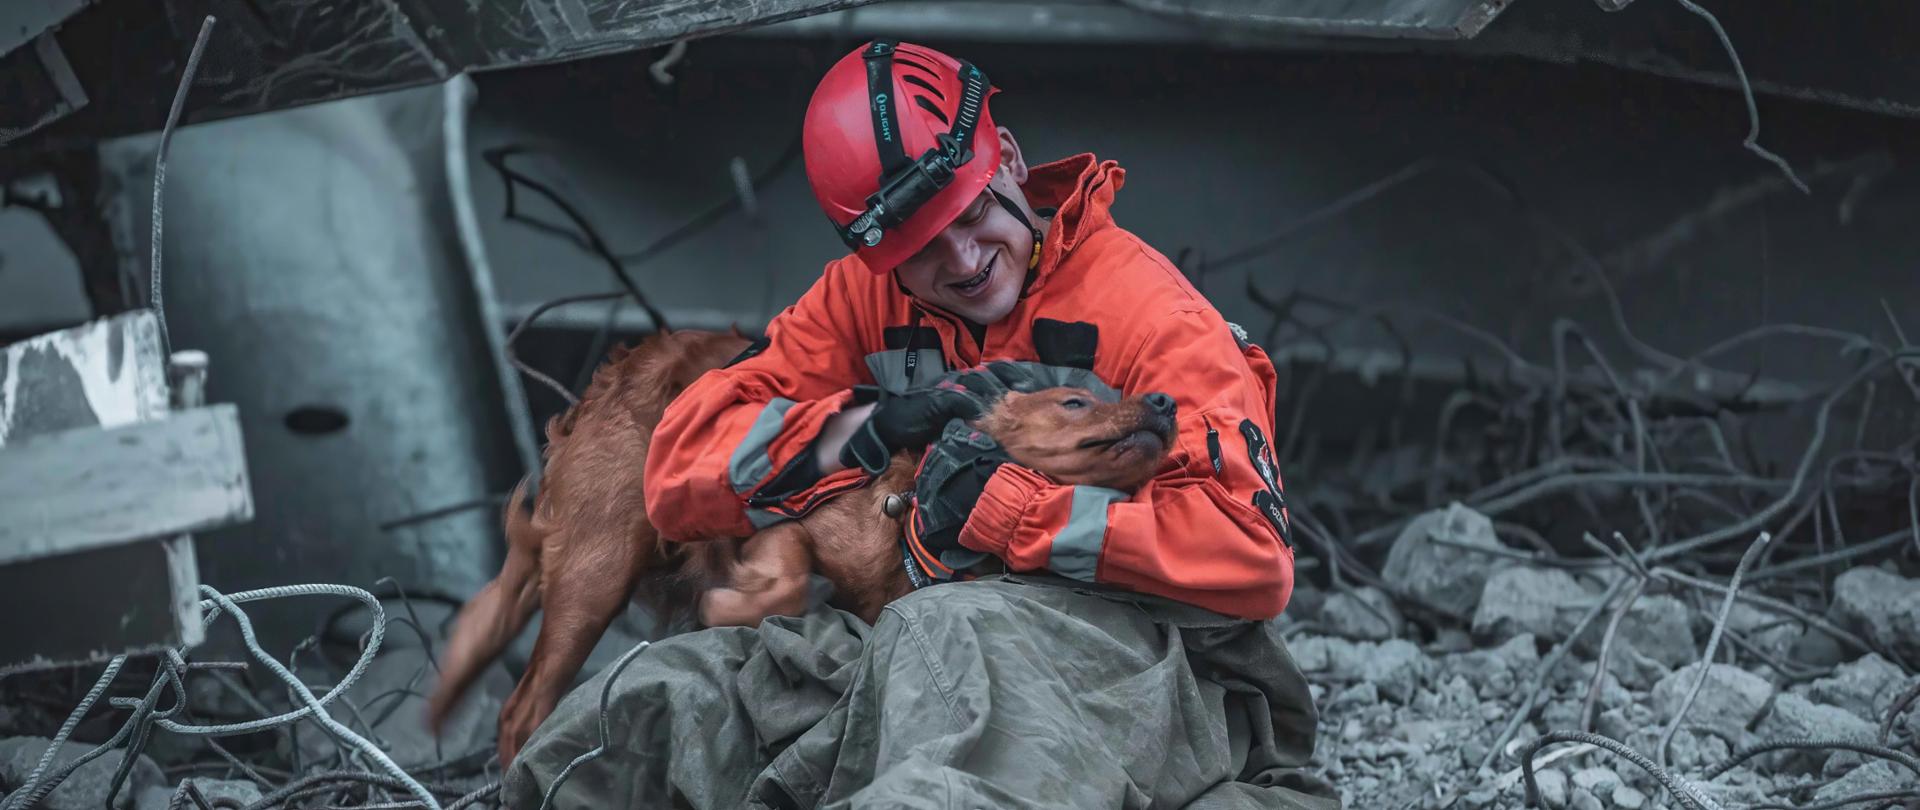 Strażak ratownik obejmuje psa ratowniczego na rumowisku budynku. Wokół strażaka i psa ratowniczego widać kawałki betonu oraz elementy konstrukcji stalowych zburzonego budynku.